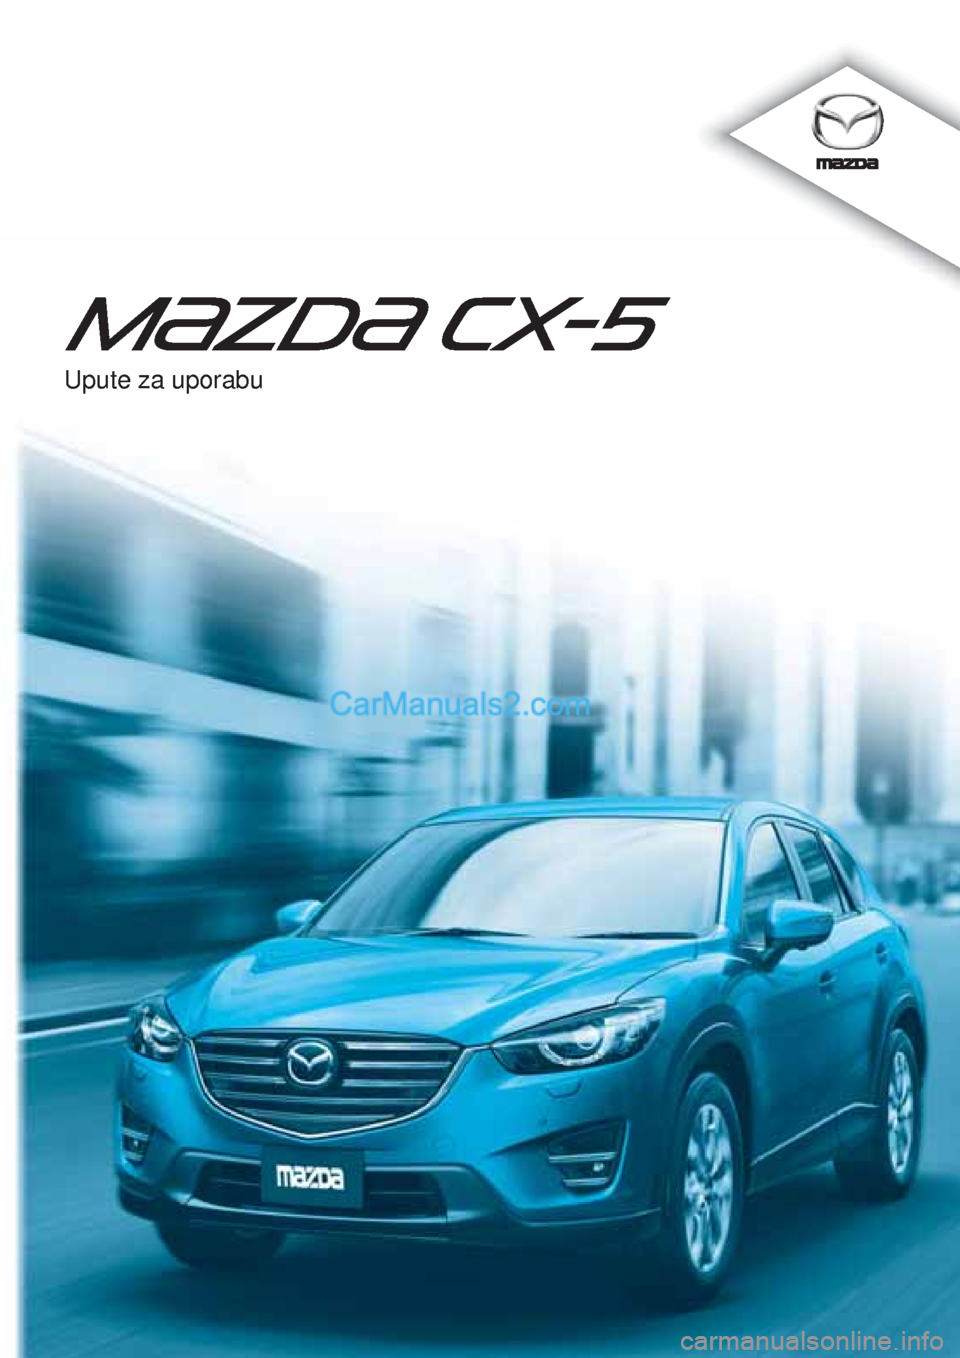 MAZDA MODEL CX-5 2015  Upute za uporabu (in Crotian) Upute za uporabu  